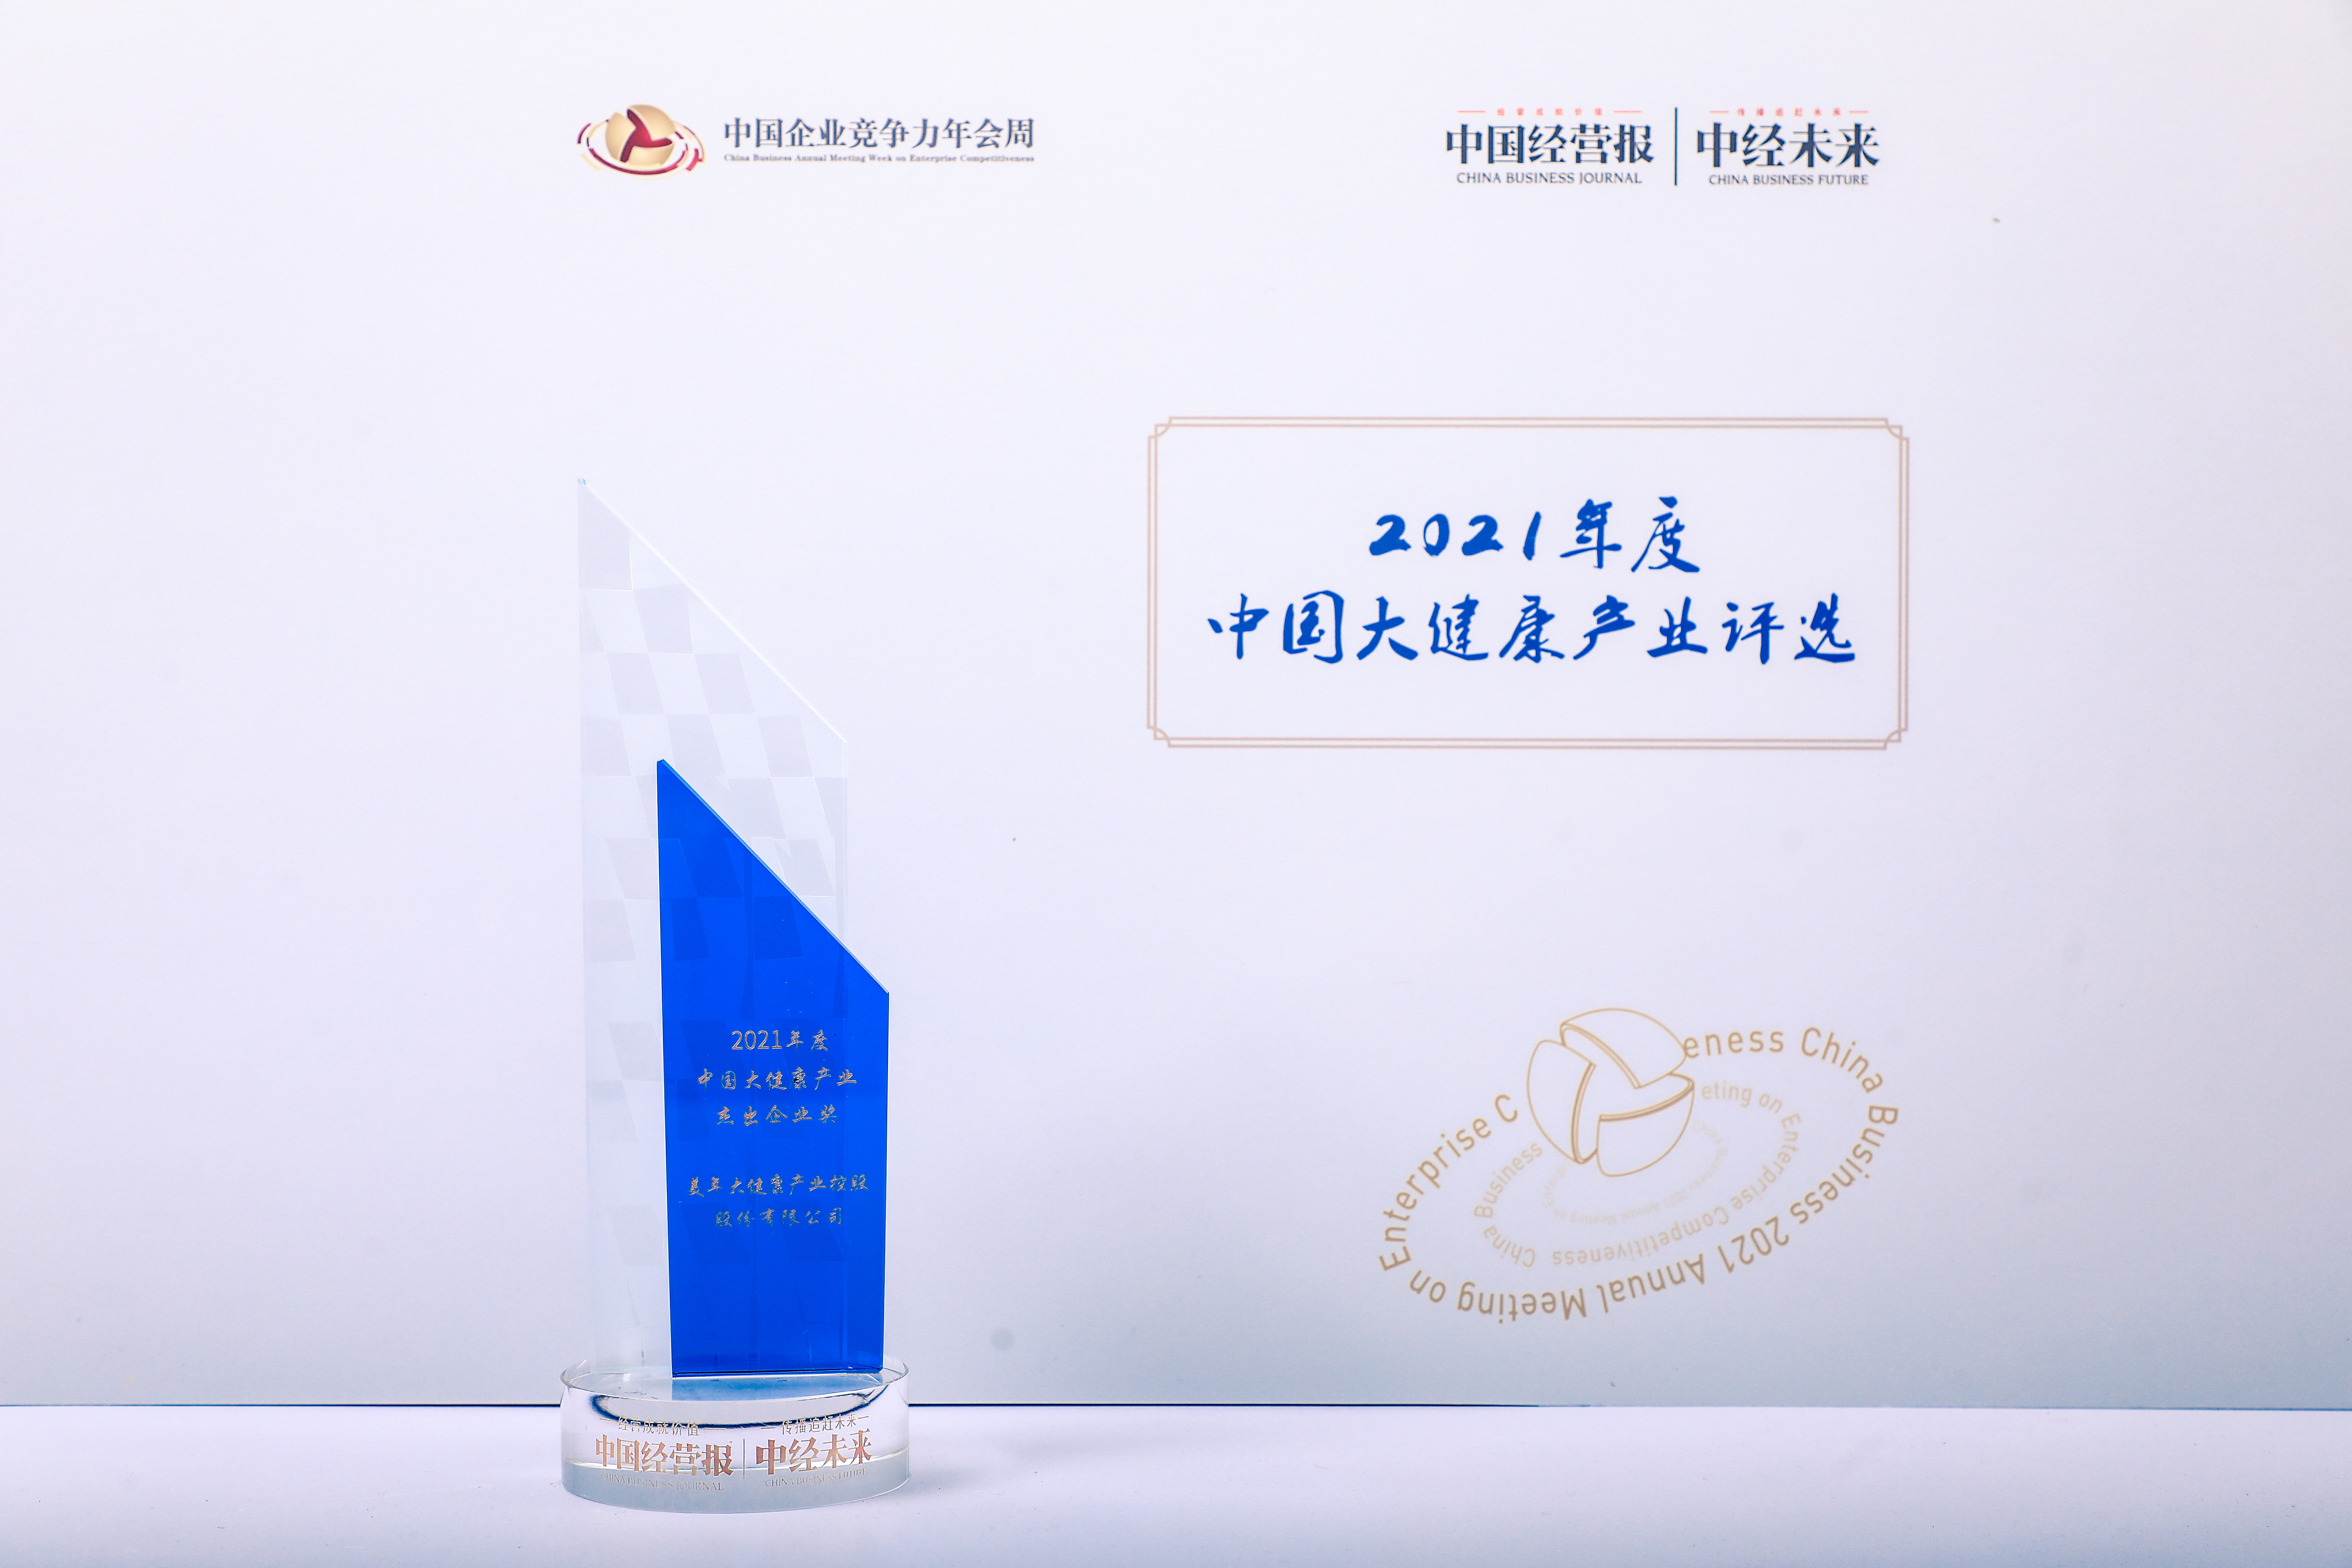 美年健康荣获“2021年度中国大健康产业杰出企业奖”